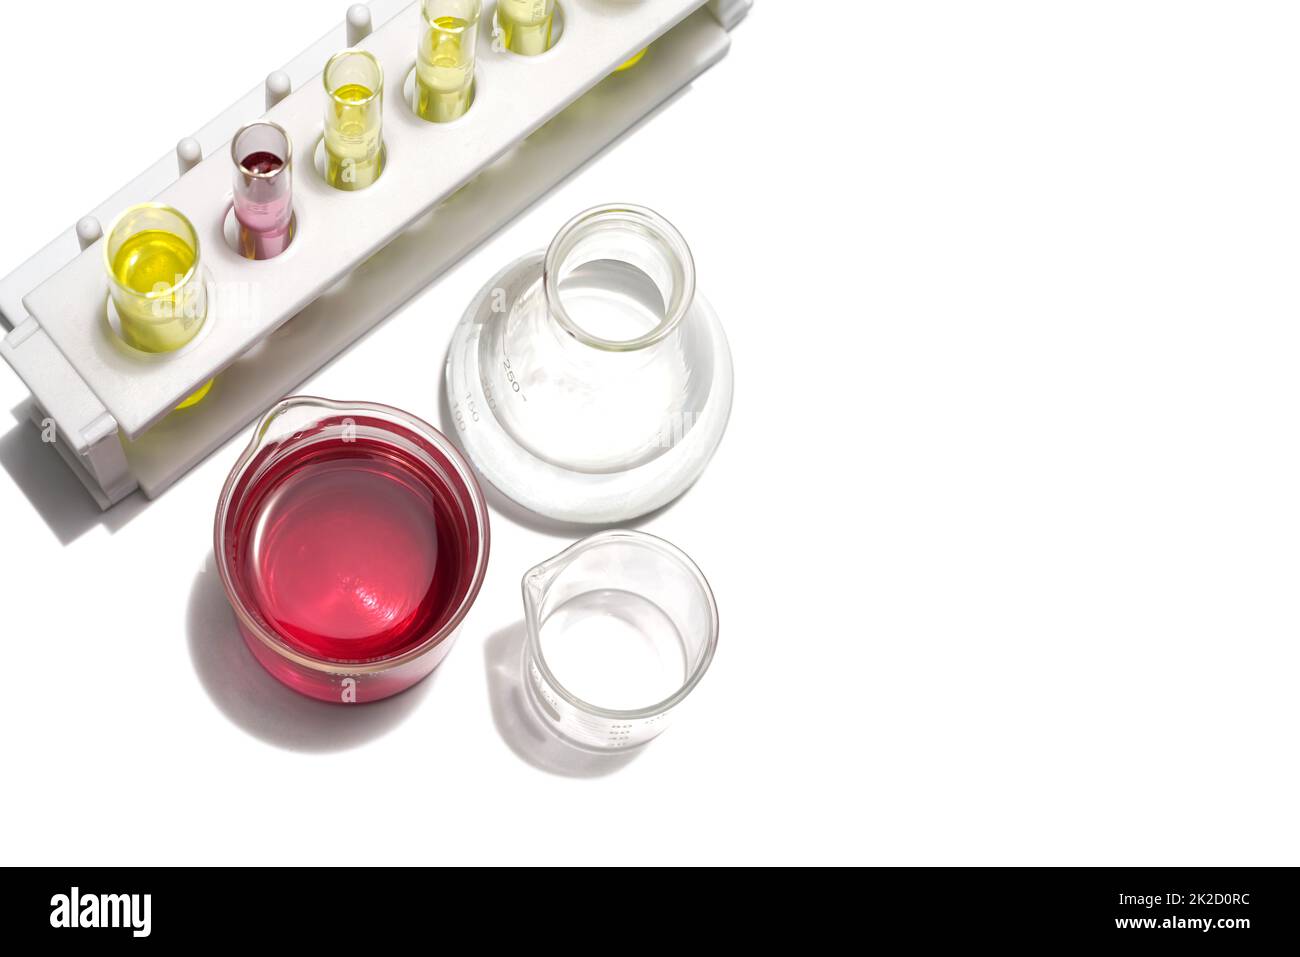 Kaliumpermanganat Flüssigkeit im Becher und Alkohol im Erlenmeyerkolben Platz neben dem Reagenzglasständer mit gelber kosmetischer Farbe (Öl). Stockfoto